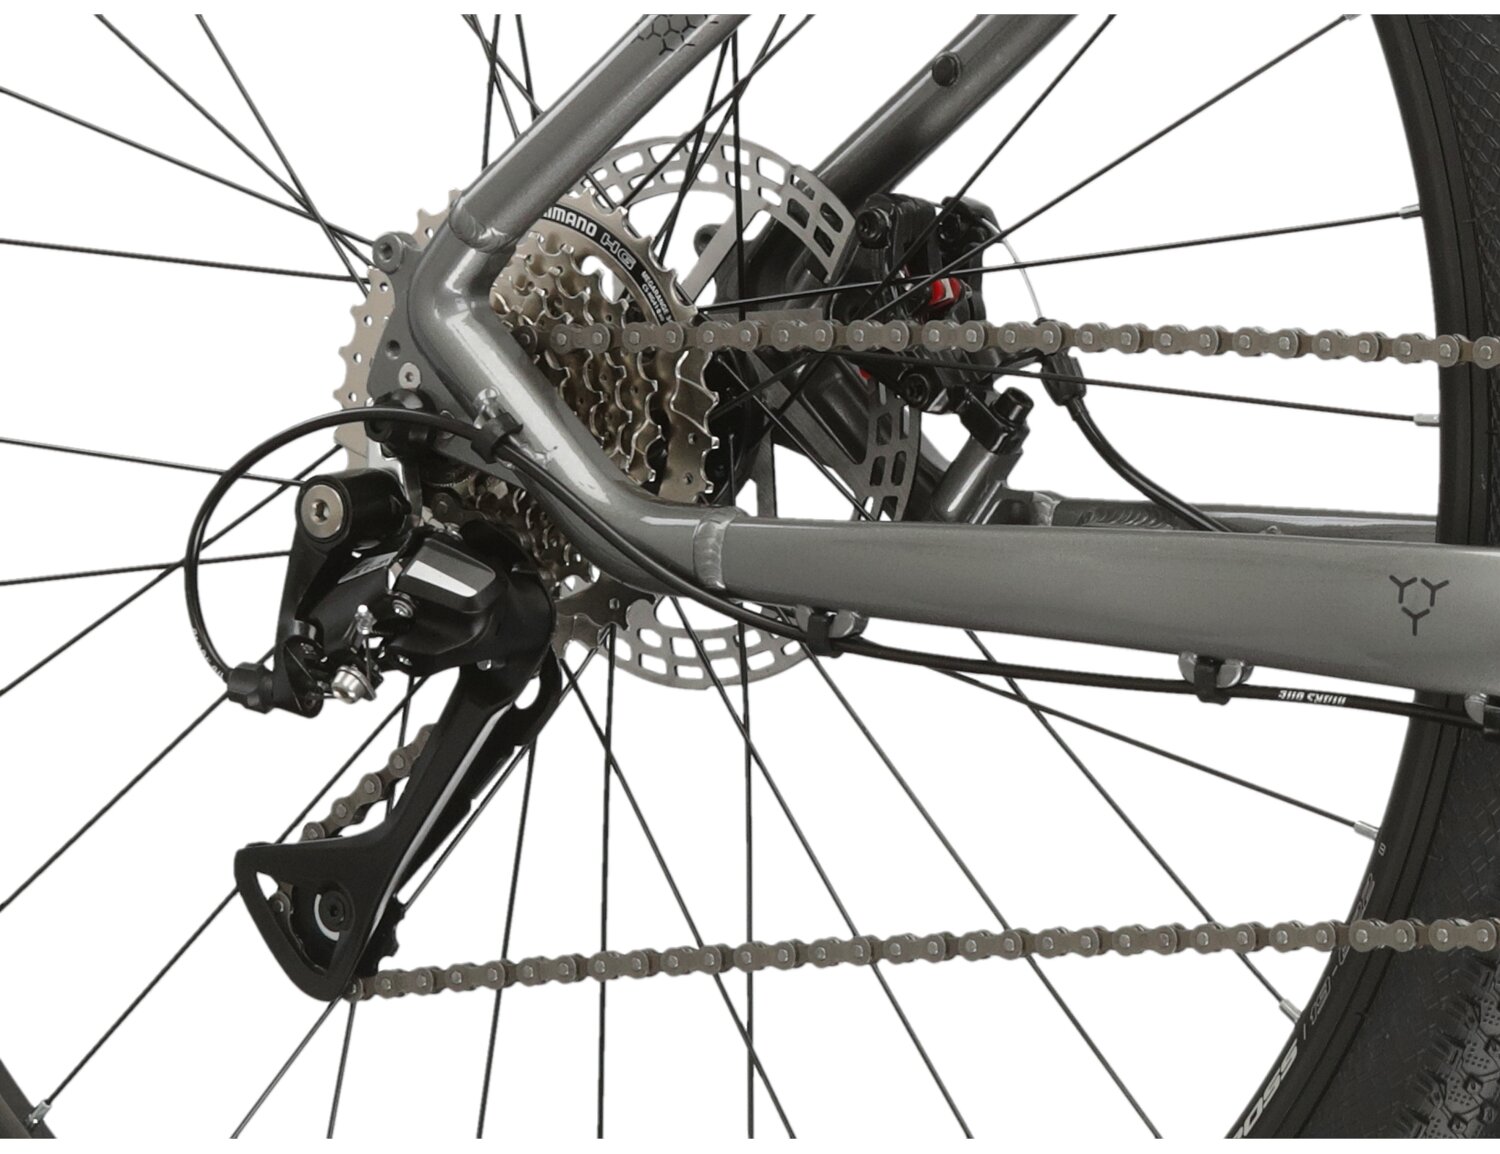  Tylna ośmiorzędowa przerzutka Shimano Acera M3020 oraz mechaniczne hamulce tarczowe w rowerze górskim MTB Kross Hexagon 3.0 